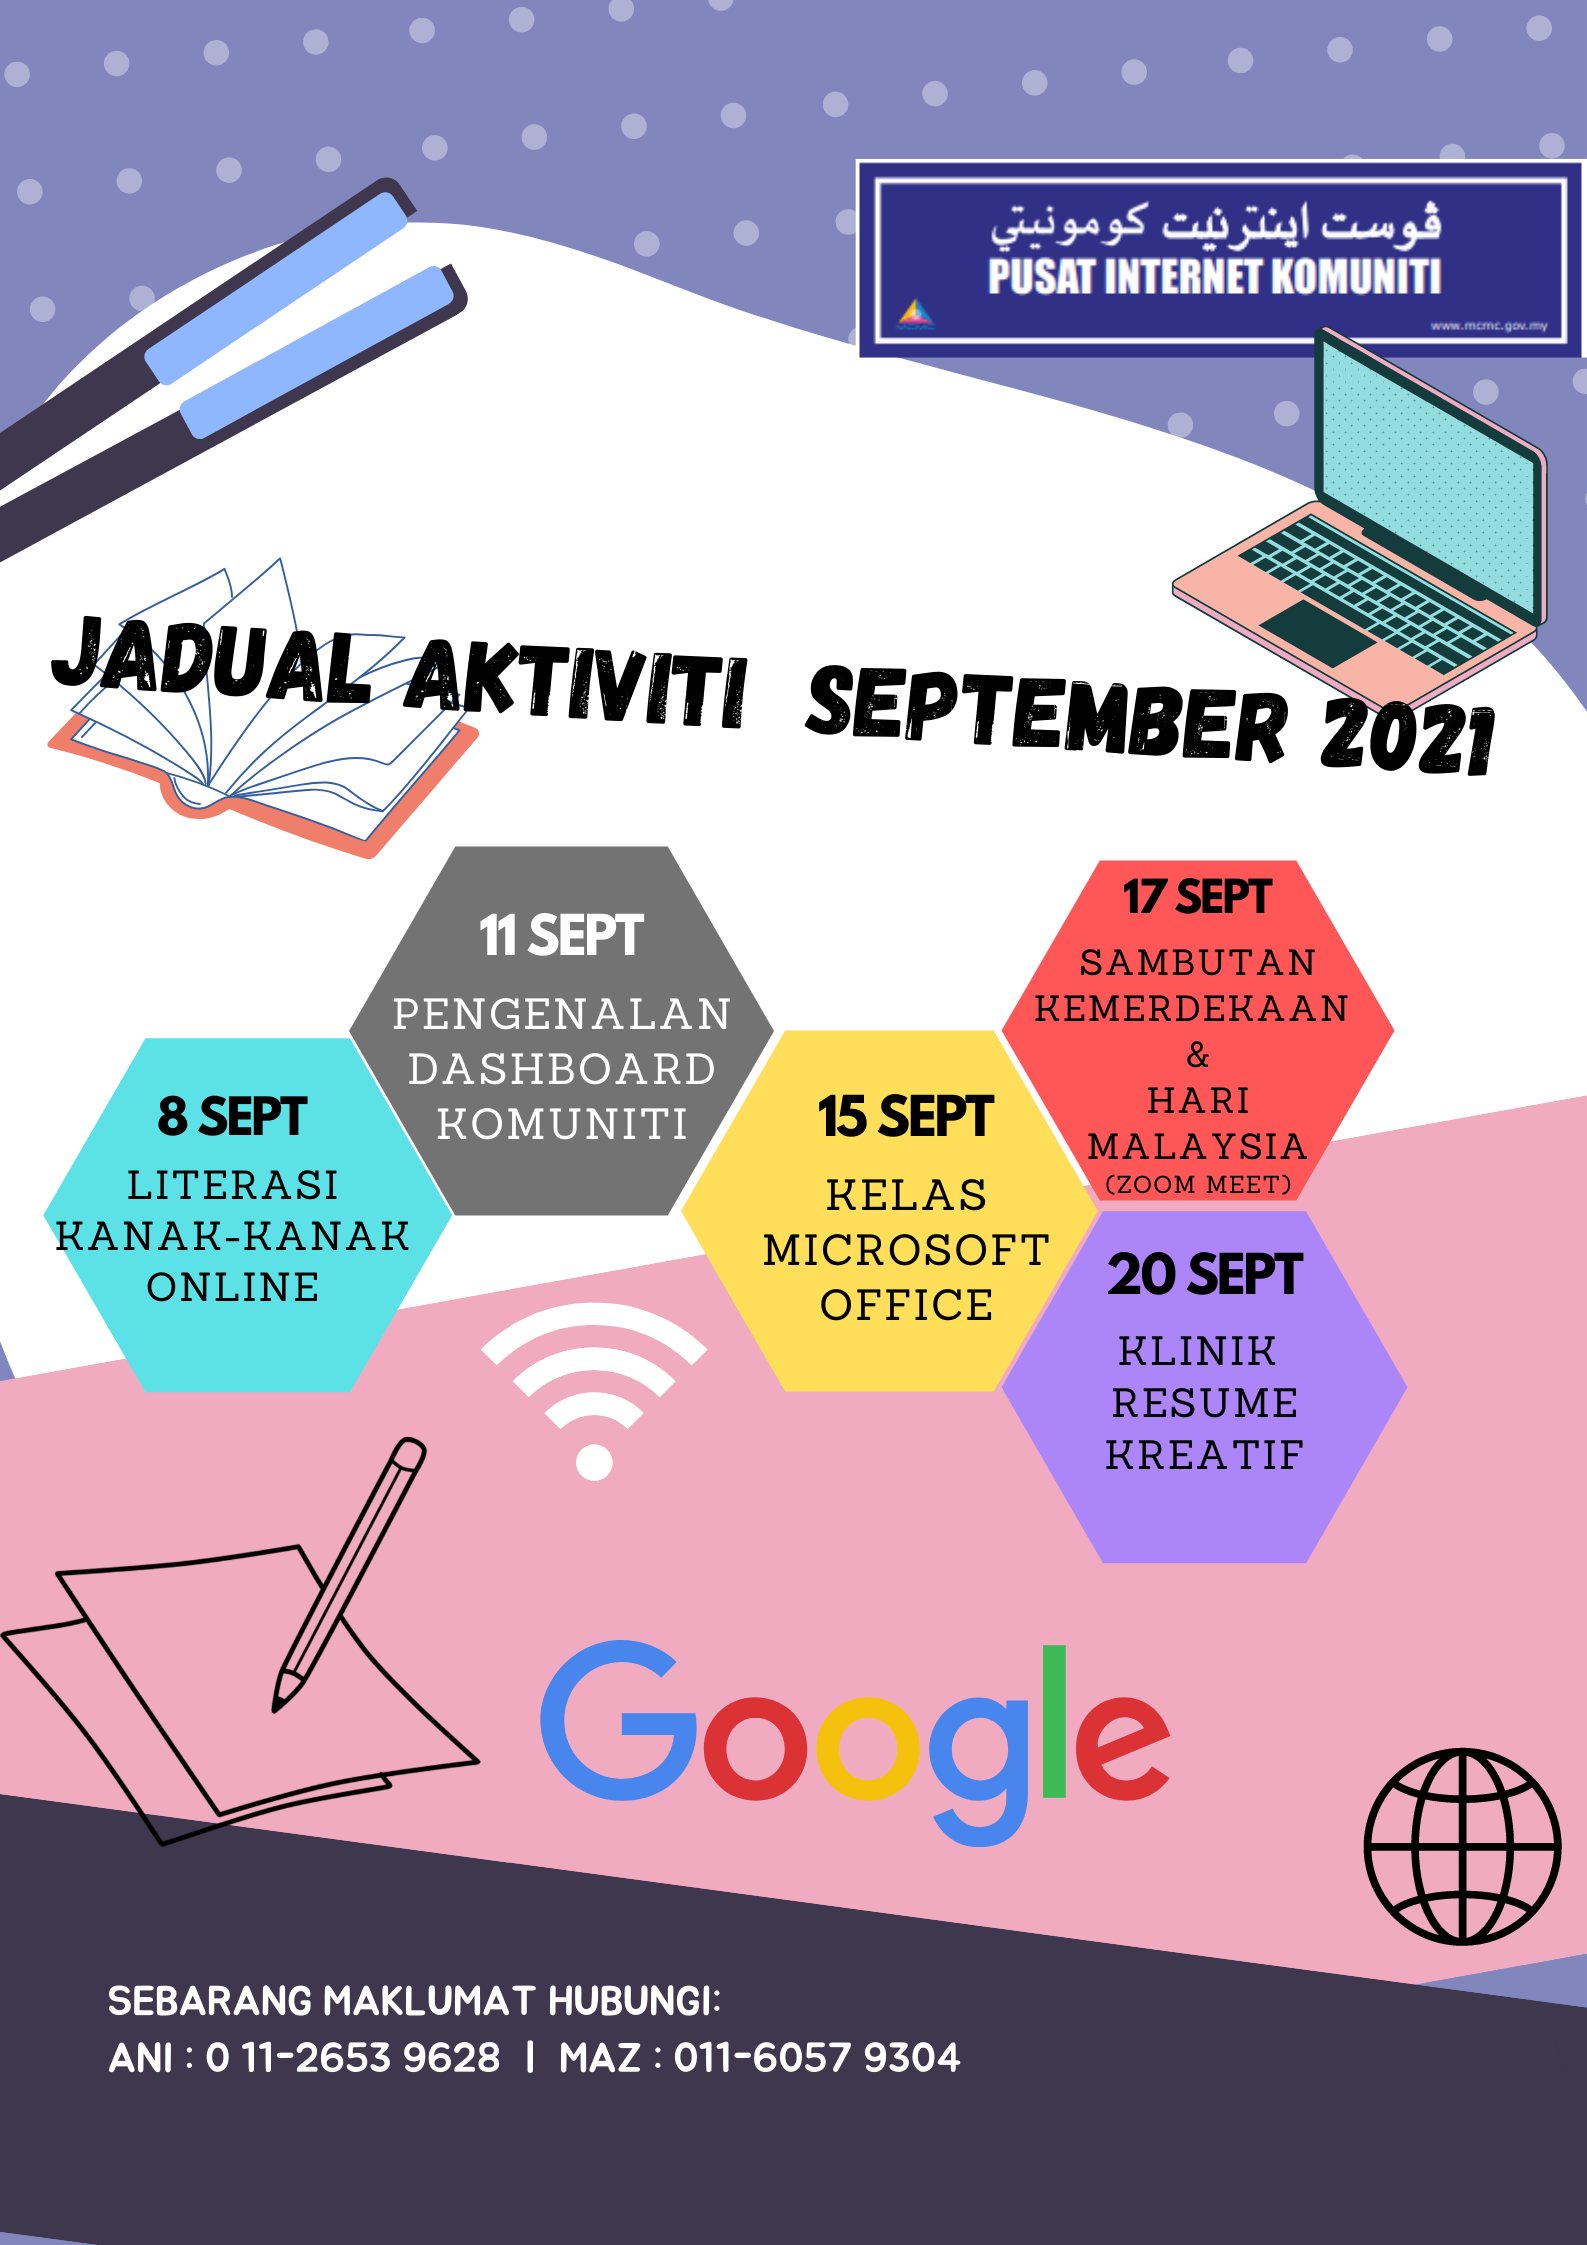 JADUAL-AKTIVITI-SEPT-2021-1